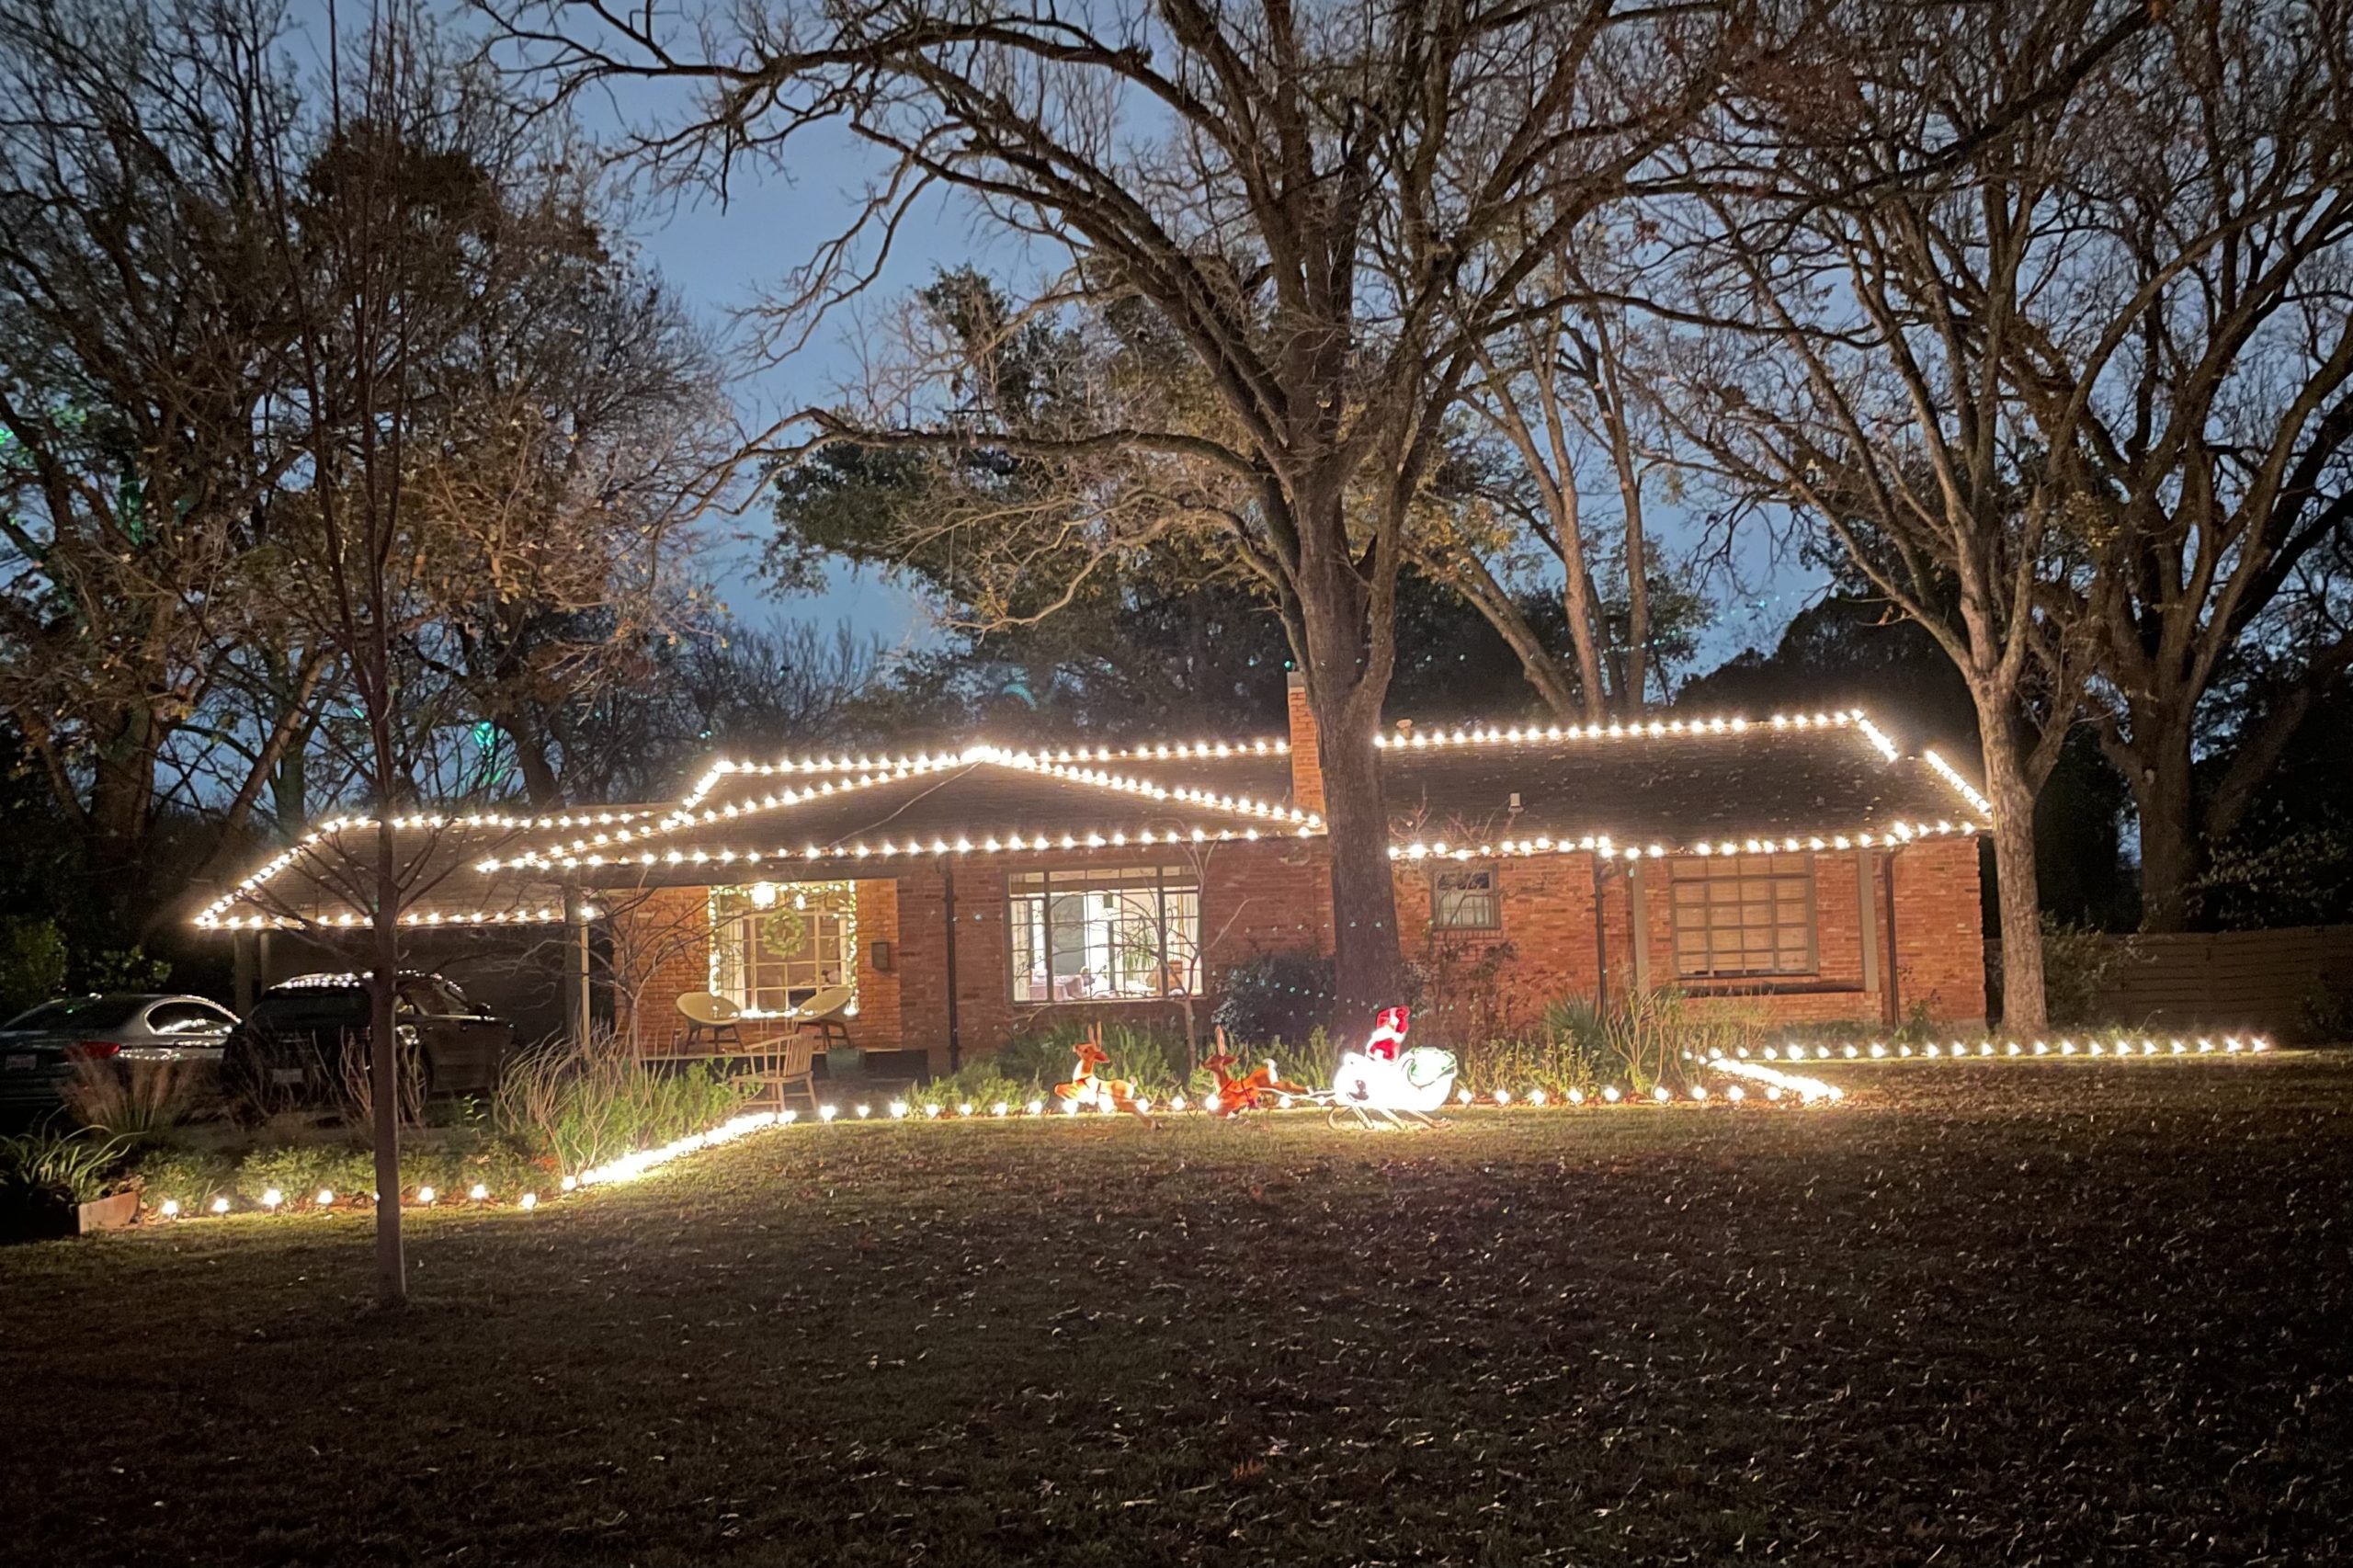 Holiday lights and Santa's sleigh in Casa Linda Estates